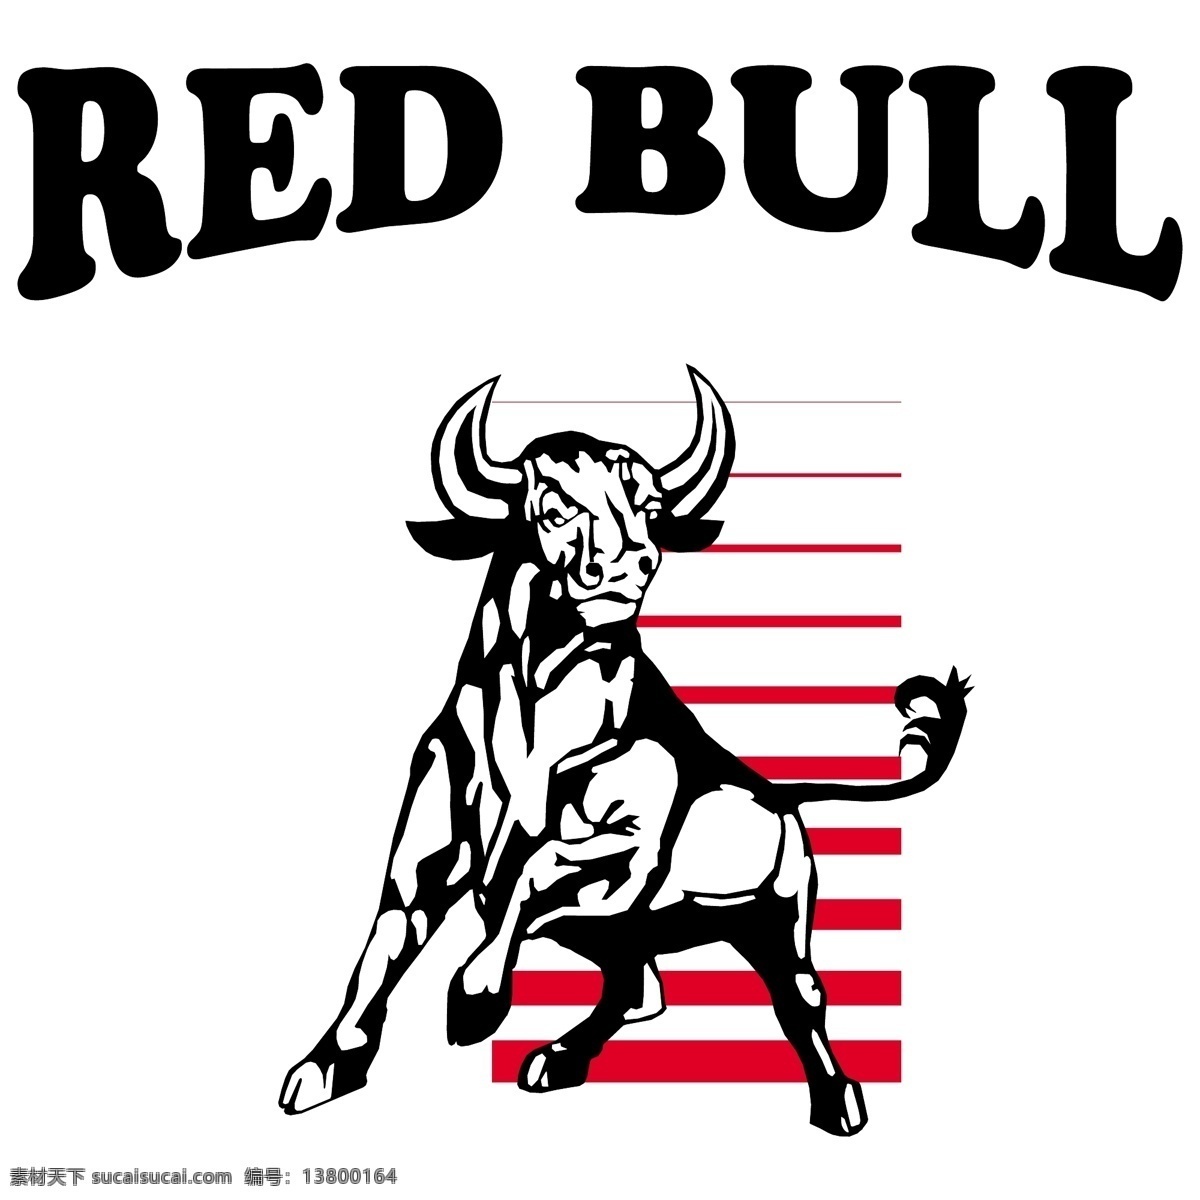 红牛 矢量标志下载 免费矢量标识 商标 品牌标识 标识 矢量 免费 品牌 公司 白色